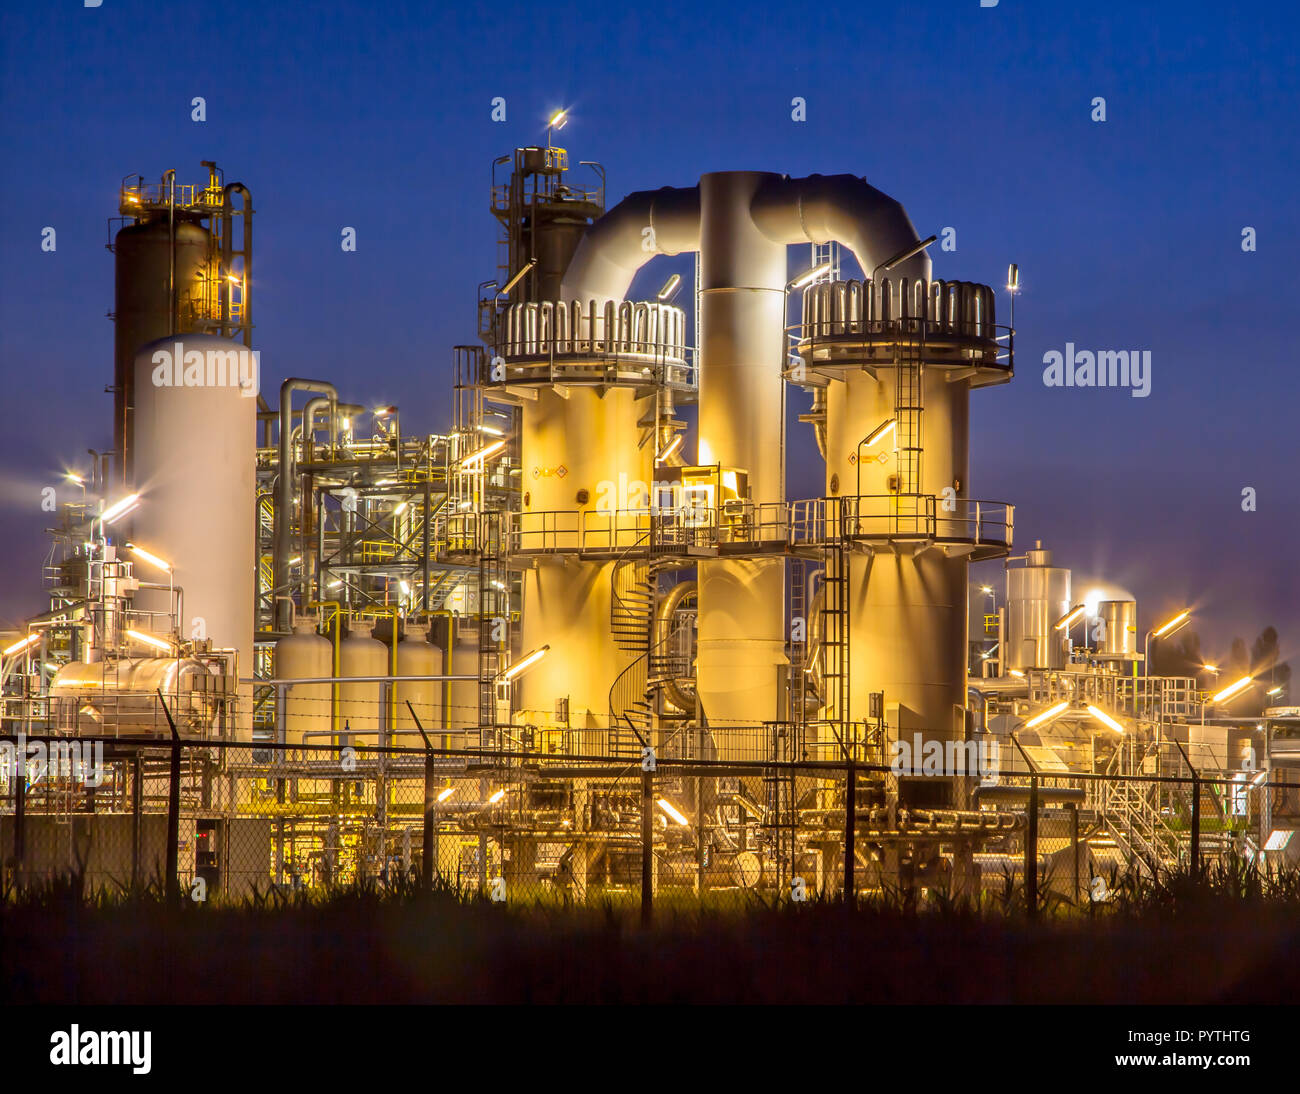 Scène de nuit d'un détail d'une installation industrielle chimique lourde avec mazework de tuyaux au crépuscule Banque D'Images